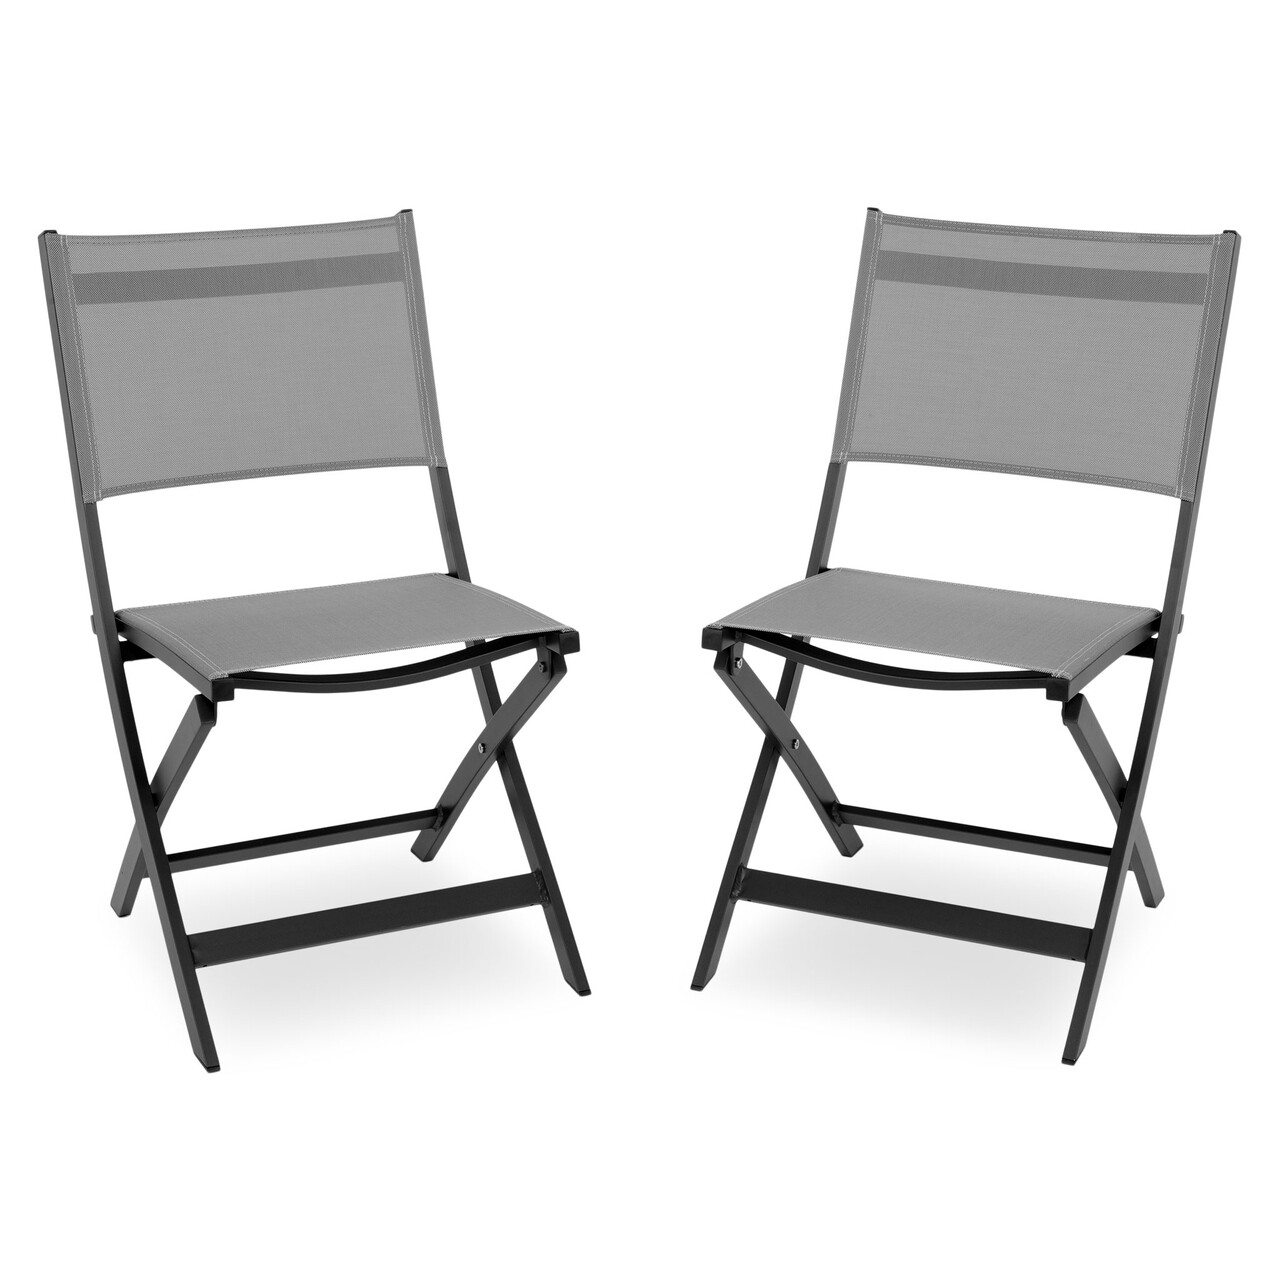 Maison breeze 2 db összecsukható szék, l.63 l.50 h.88, alumínium, fekete